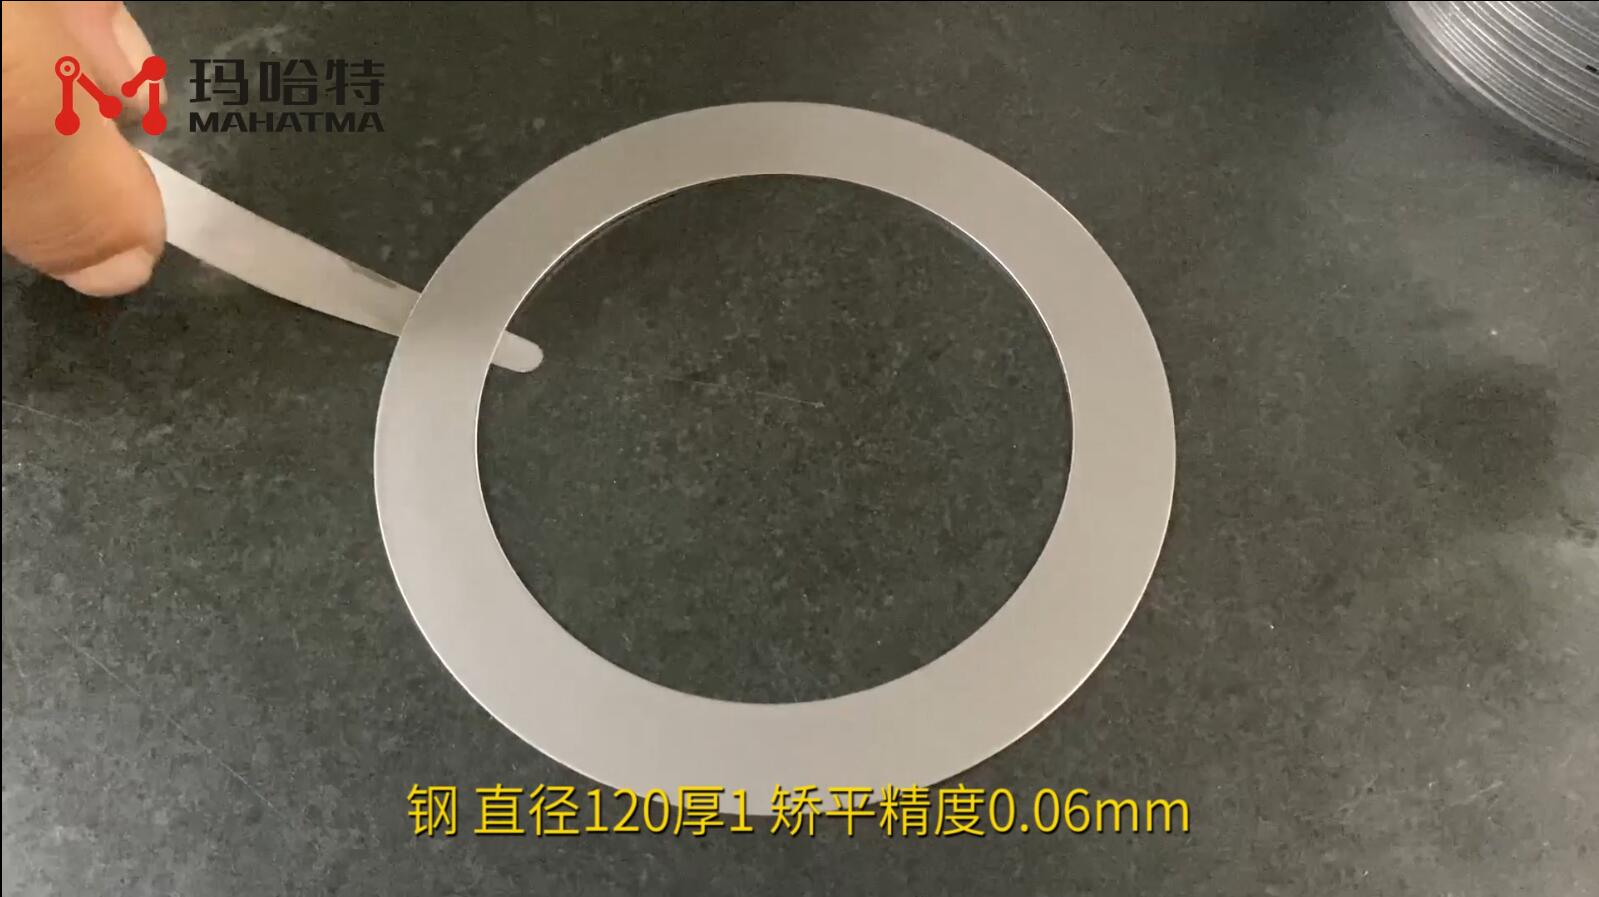 钢 MHT20-600 圆形 直径120厚1 矫平精度0.06mm